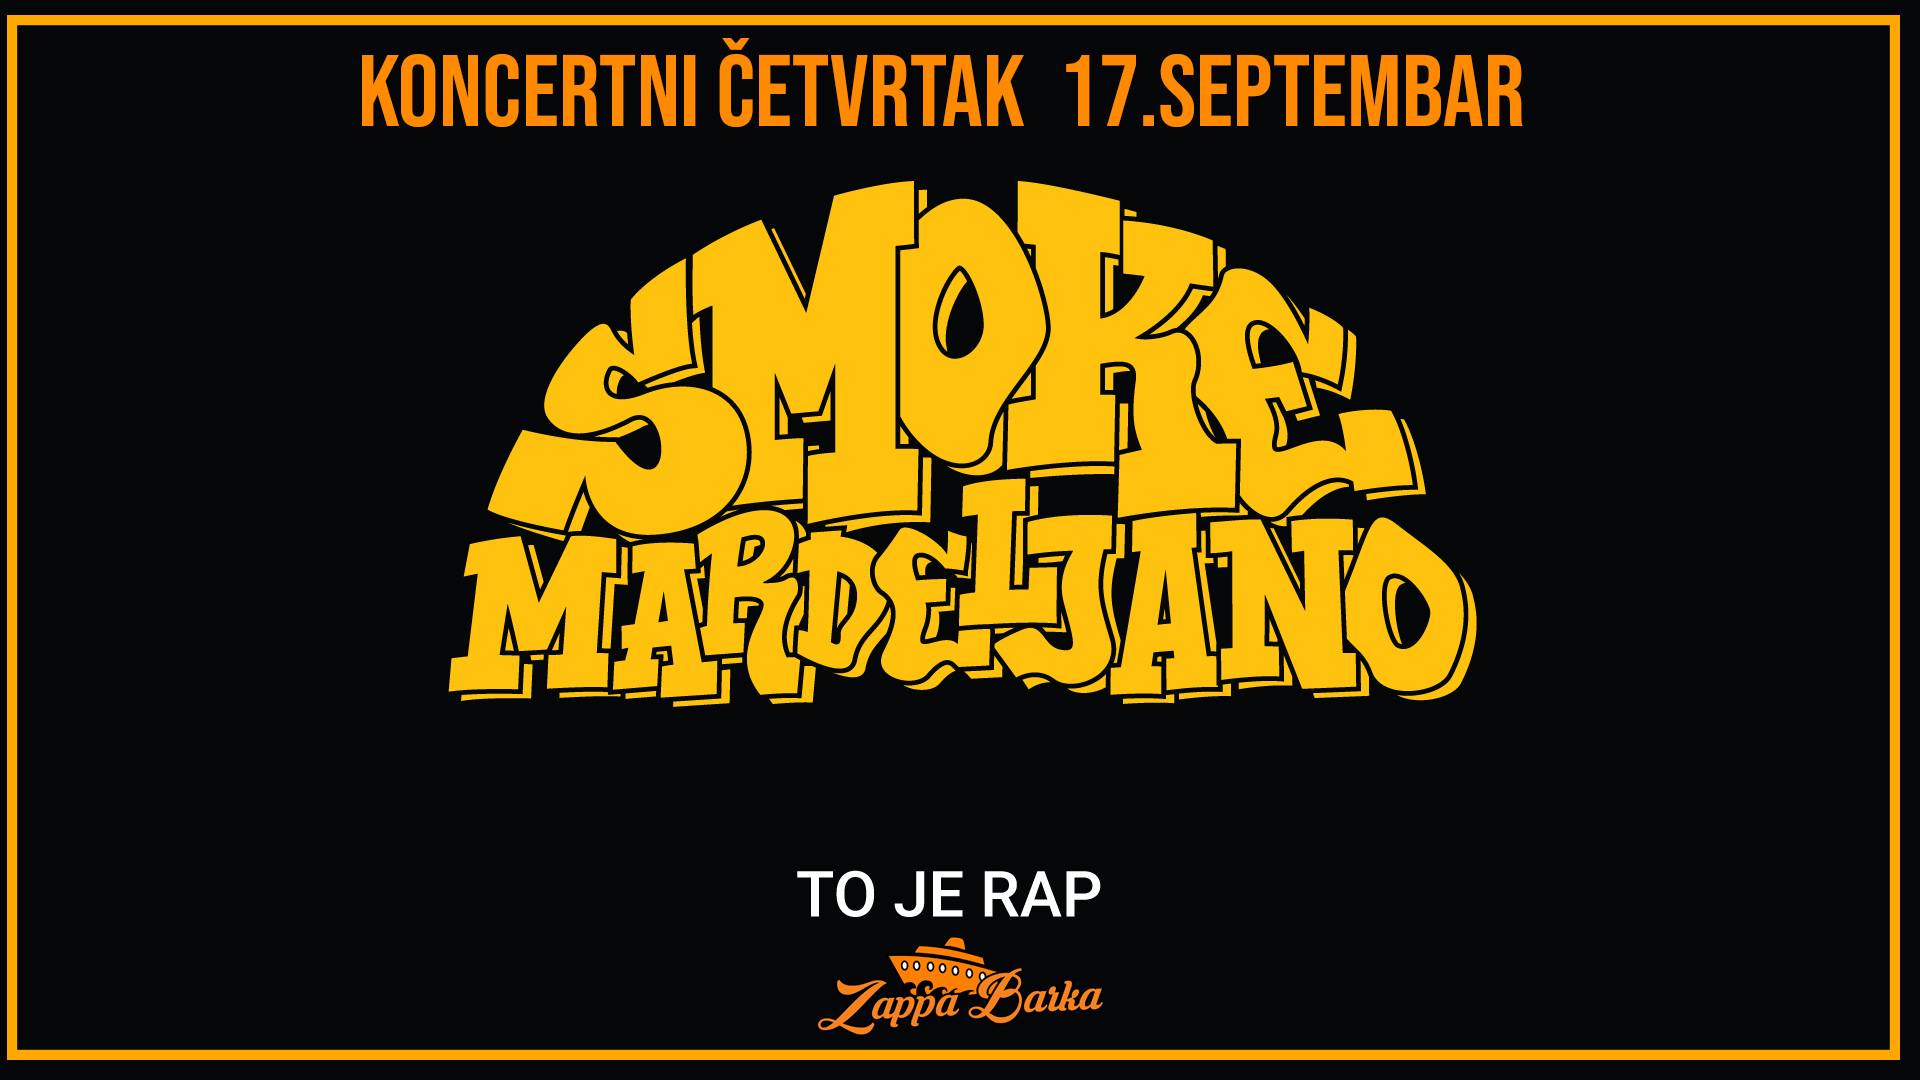 Koncertni četvrtak – Smoke Mardeljano 17.09.2020 Zappa Barka